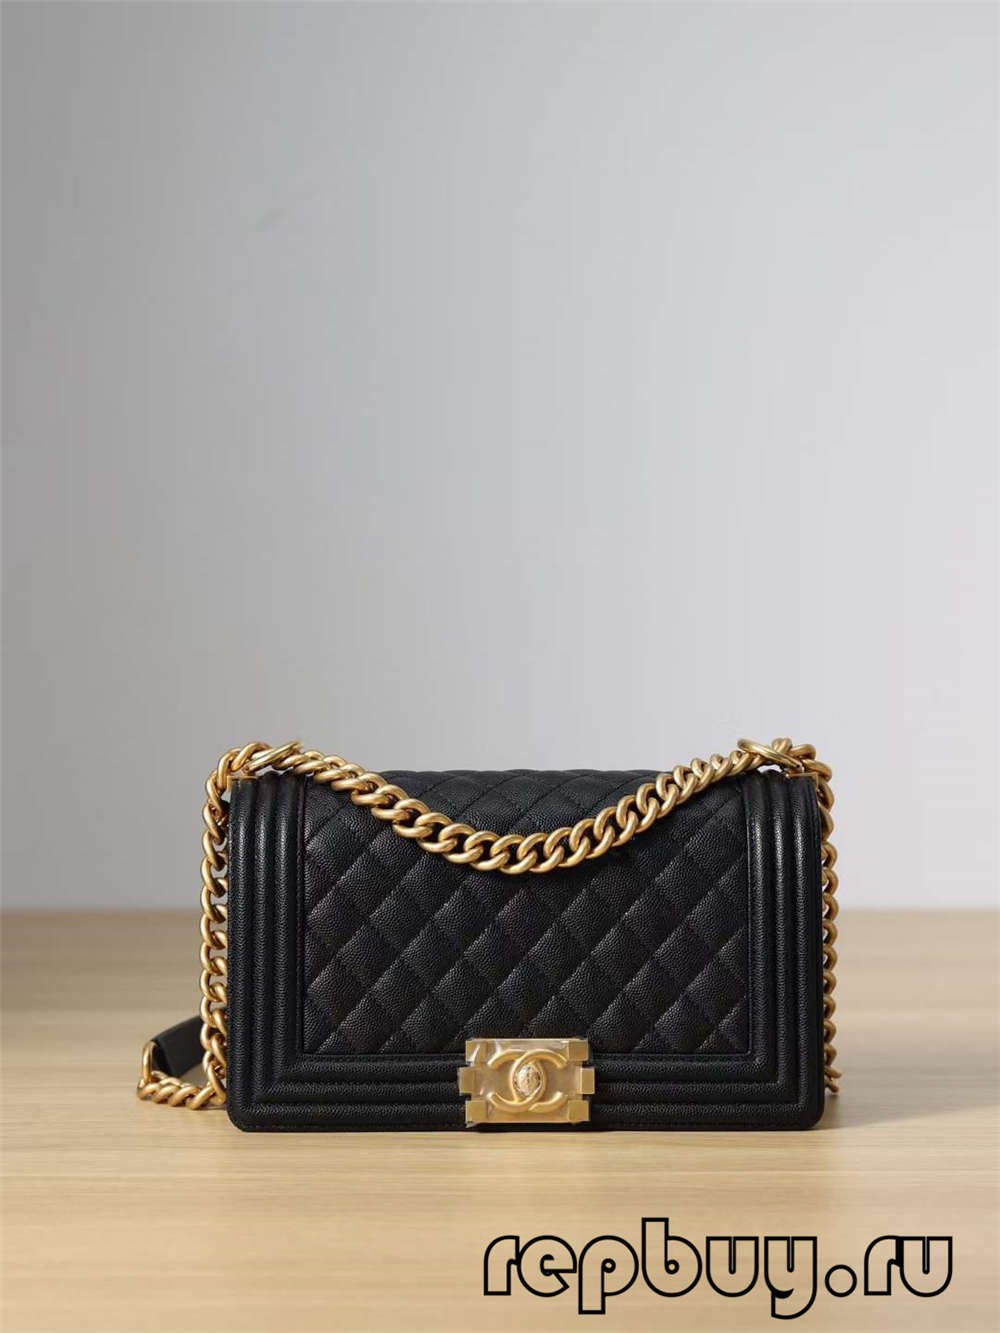 Chanel Leboy Top Replica Handbag Medium Gold Buckle (2022 Edition)-Լավագույն որակի կեղծ Louis Vuitton պայուսակների առցանց խանութ, Replica դիզայներական պայուսակ ru